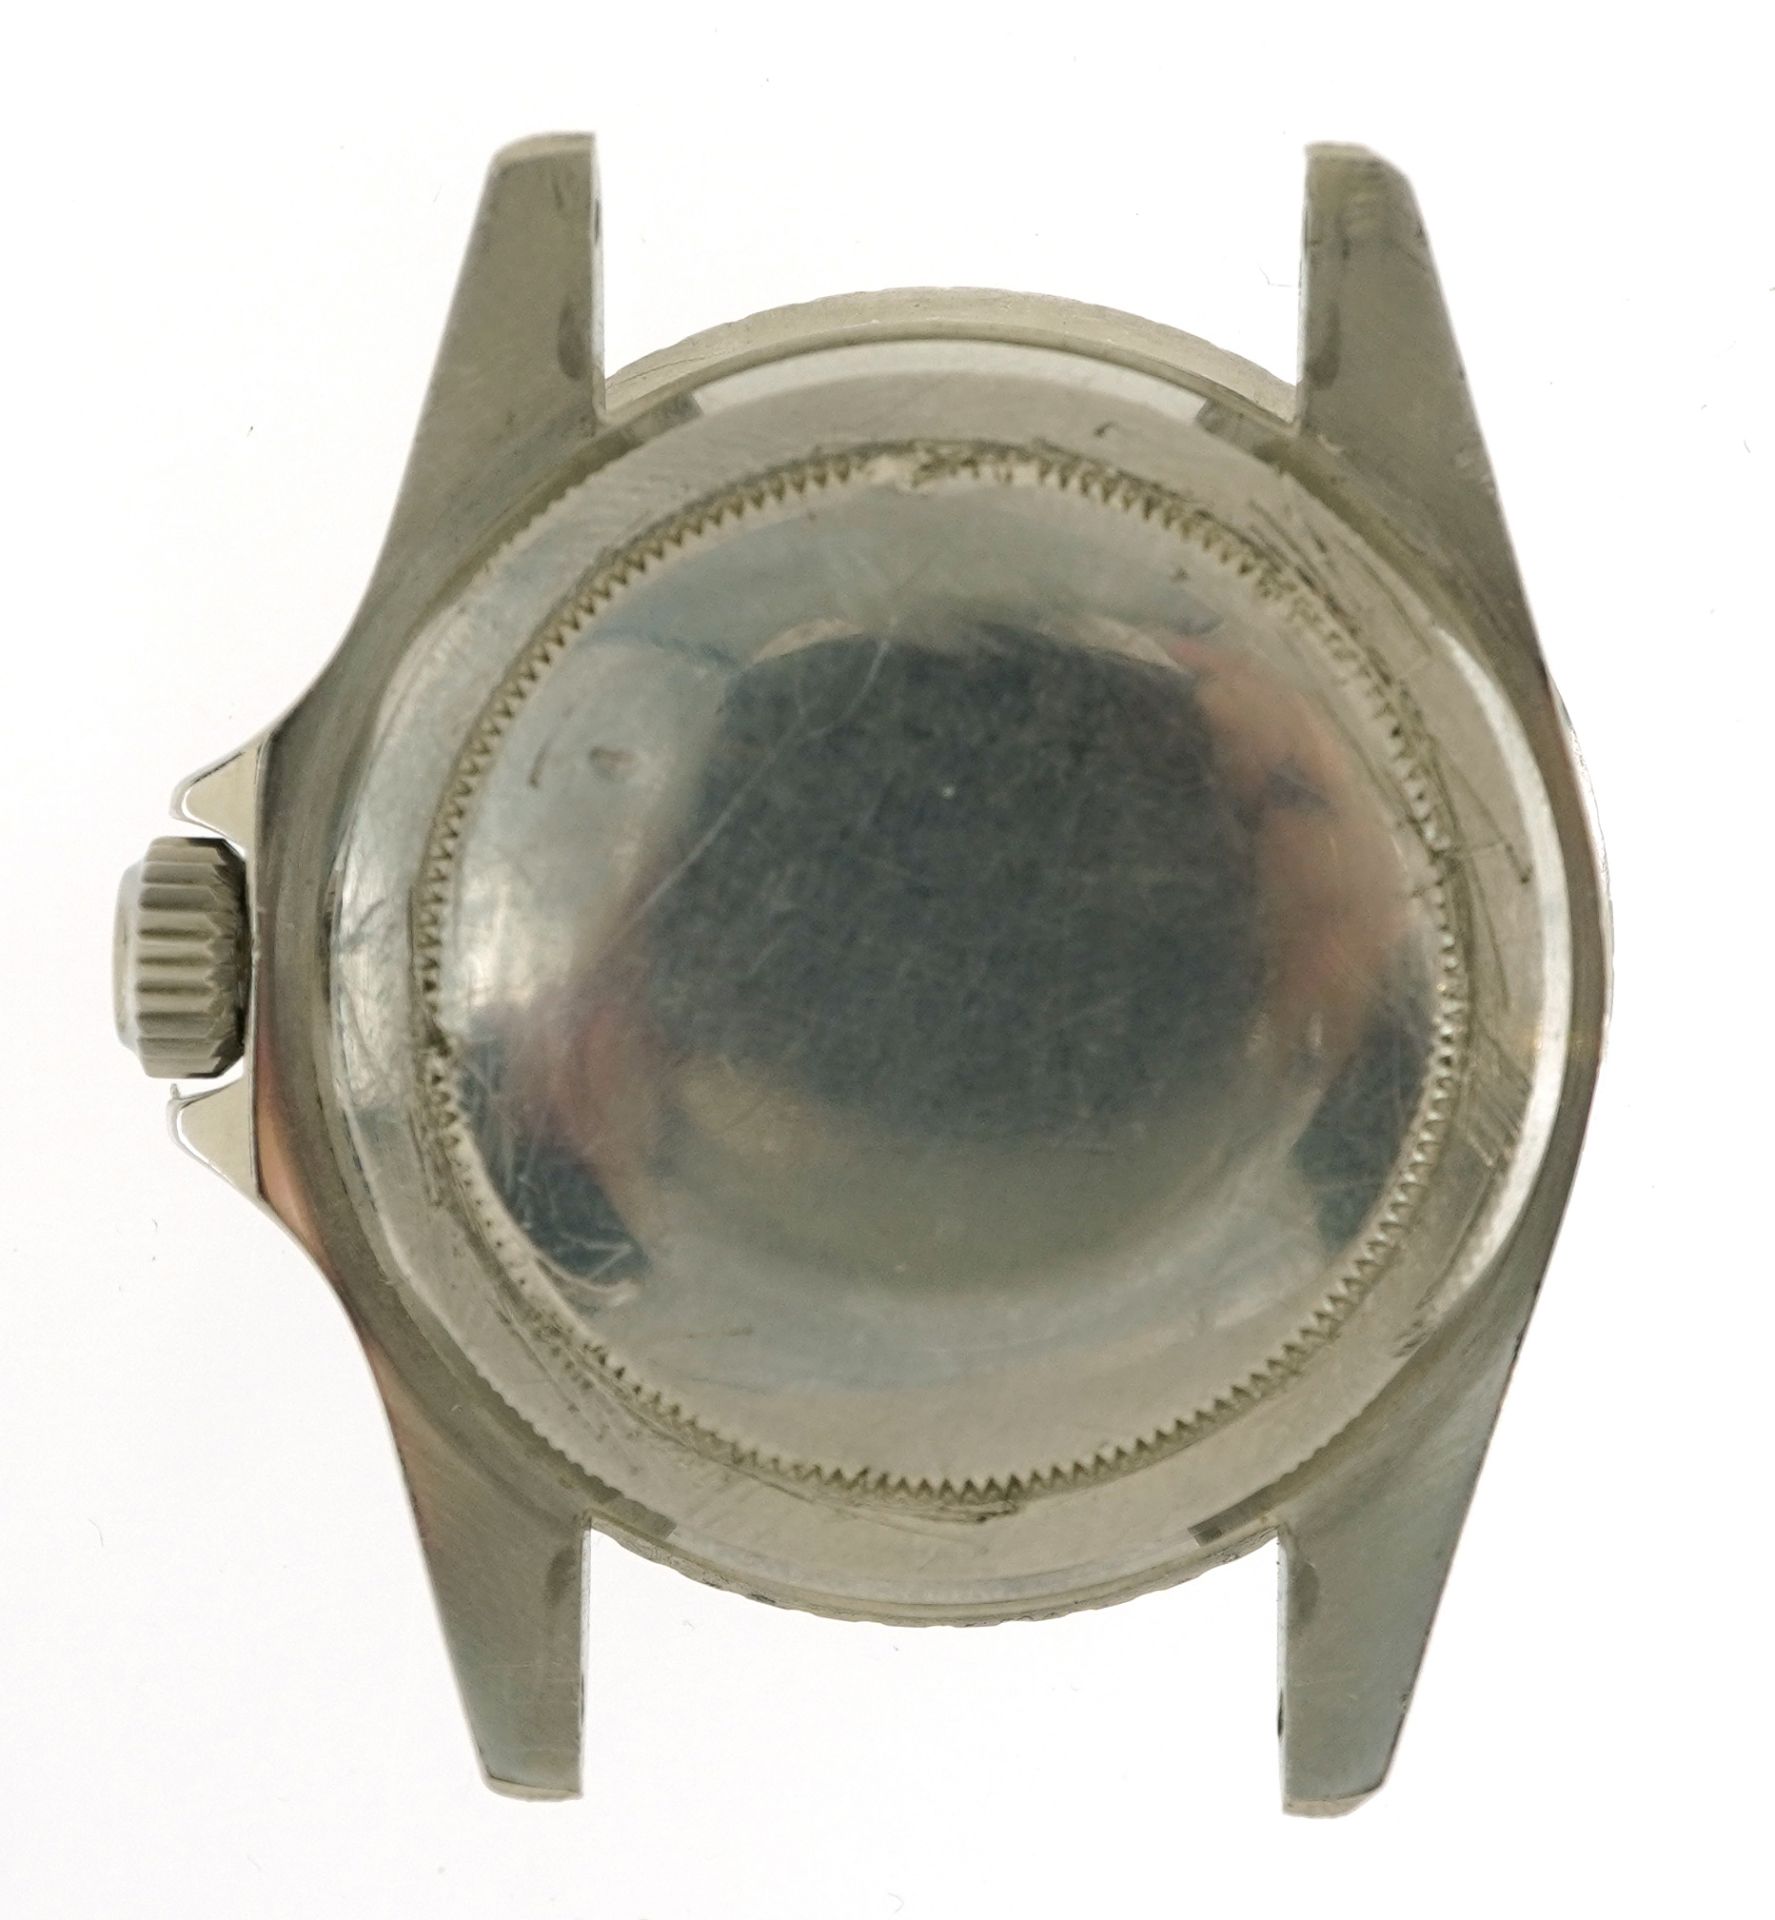 Rolex, gentleman's Rolex Oyster Submariner wristwatch, ref 5521, serial number 818329, 40mm - Image 2 of 11